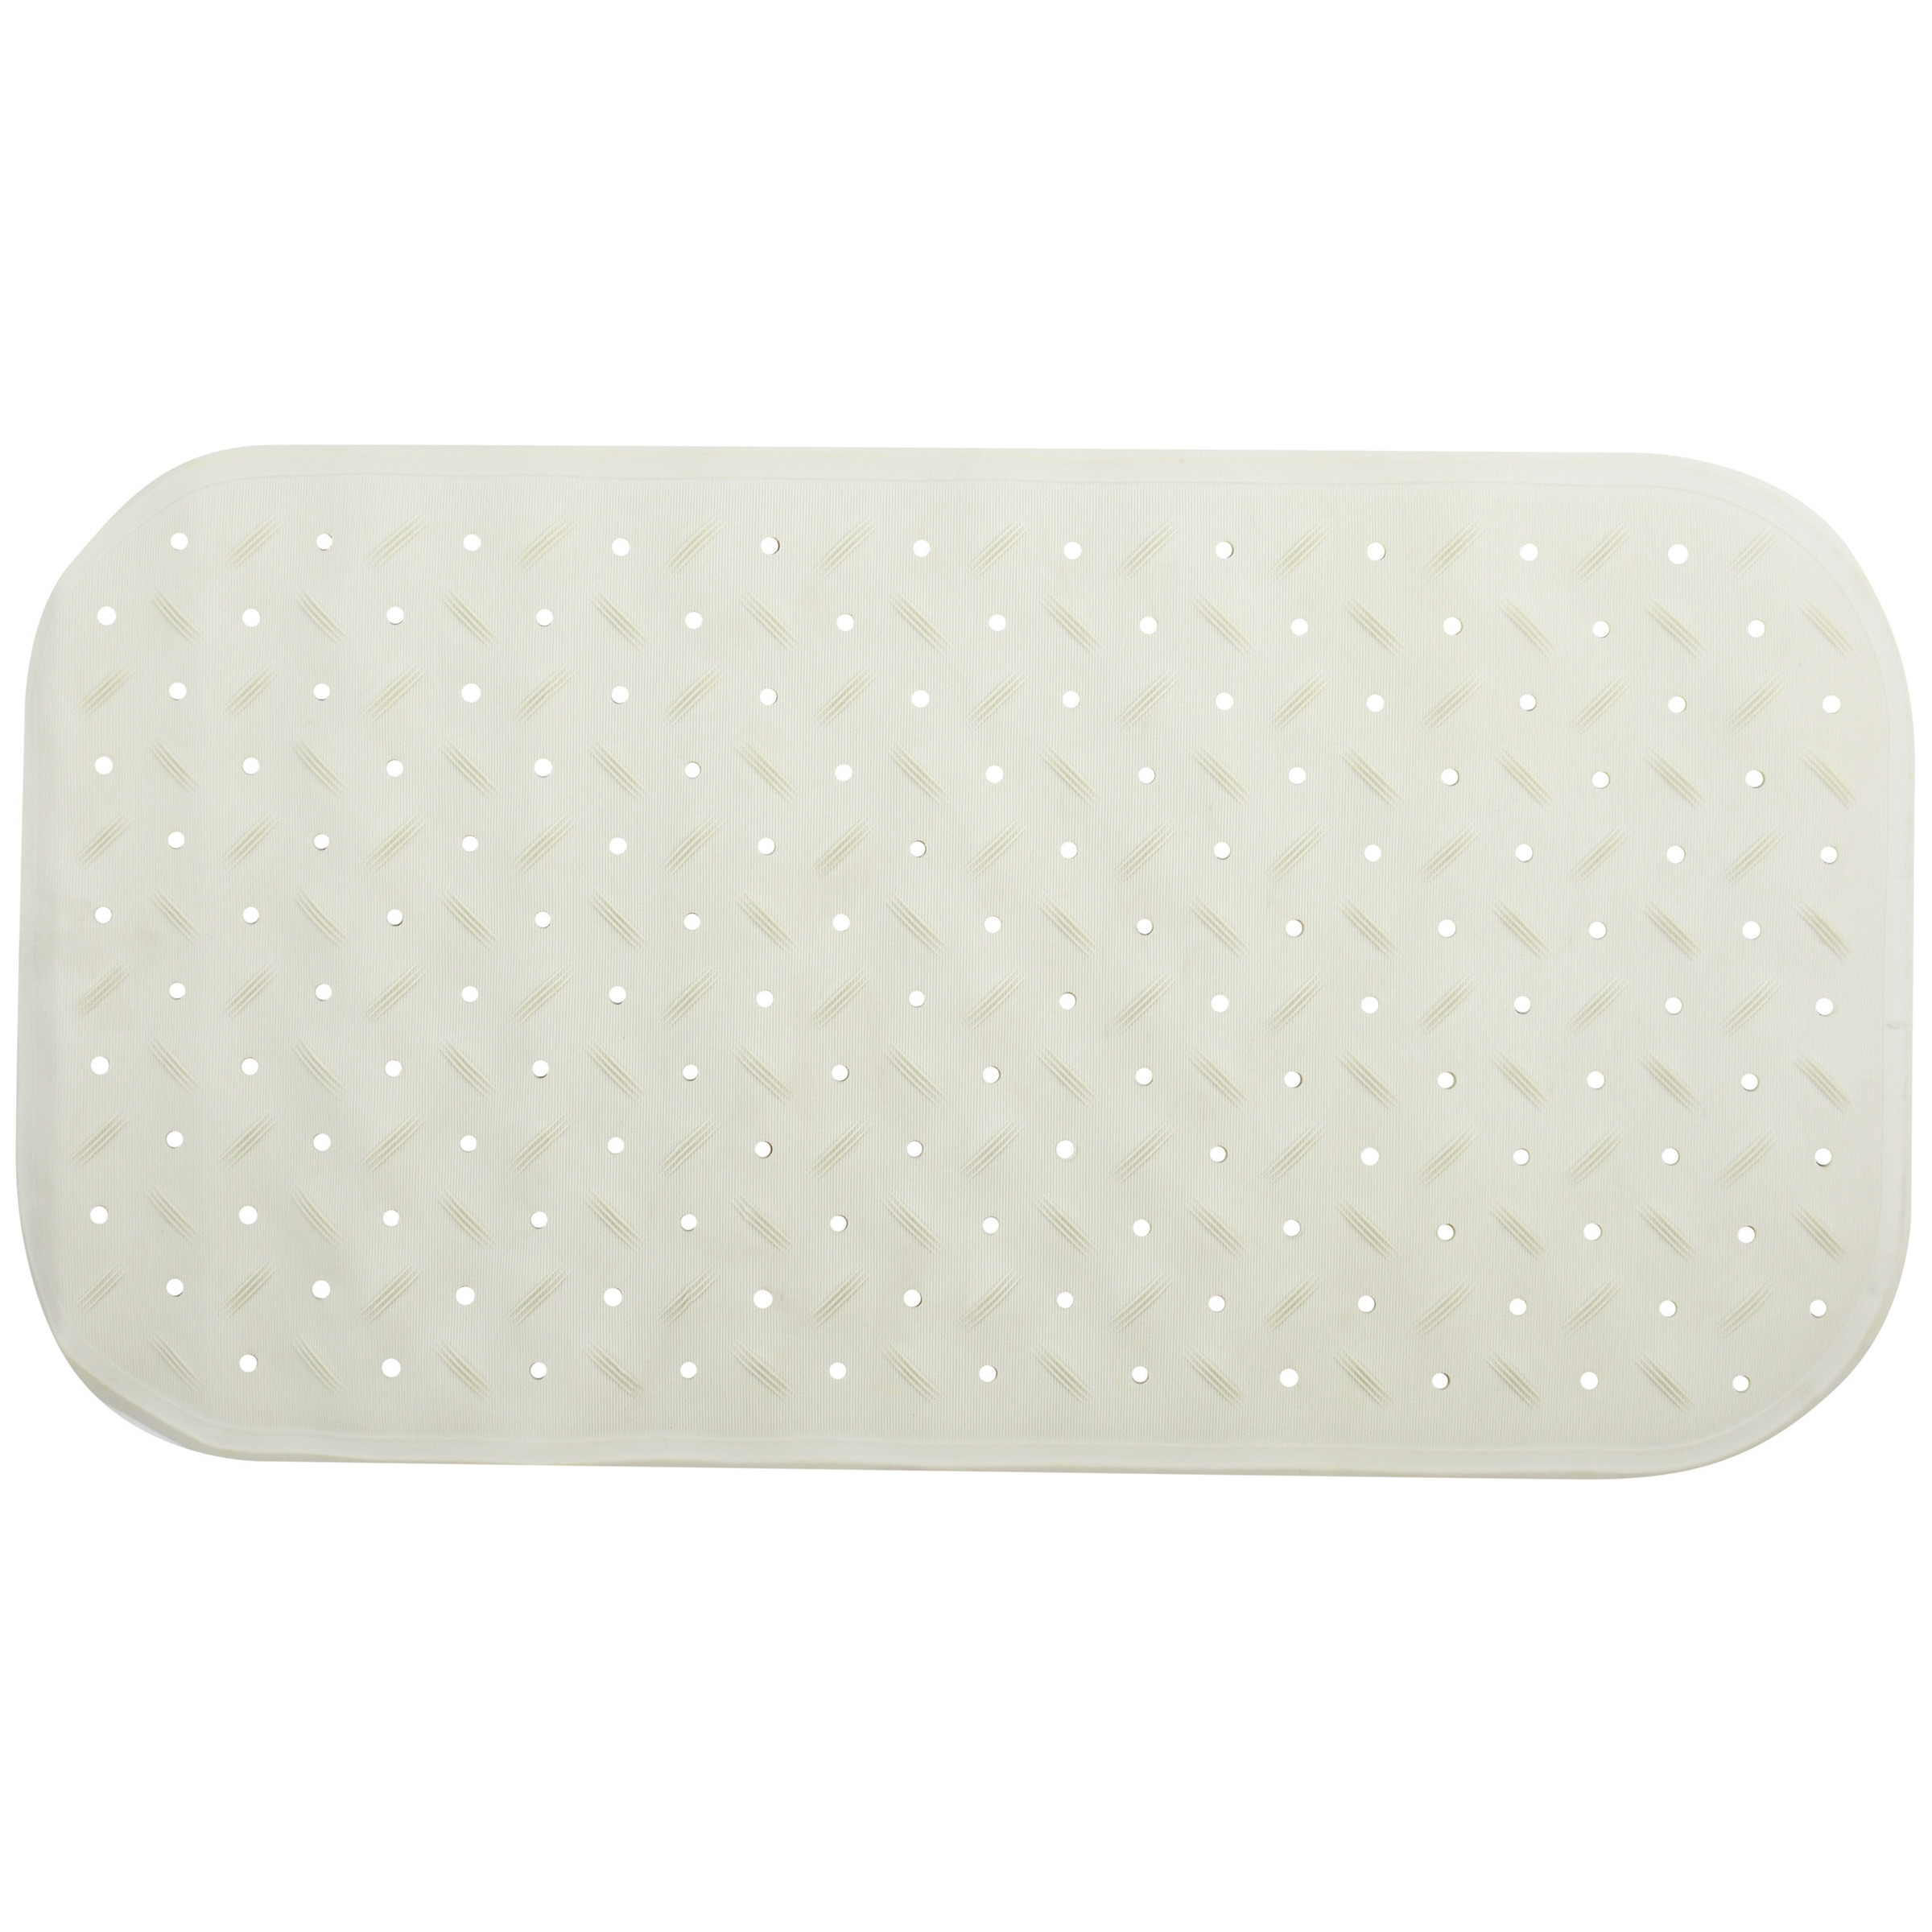 Douche-bad anti-slip mat badkamer rubber wit 36 x 76 cm rechthoek